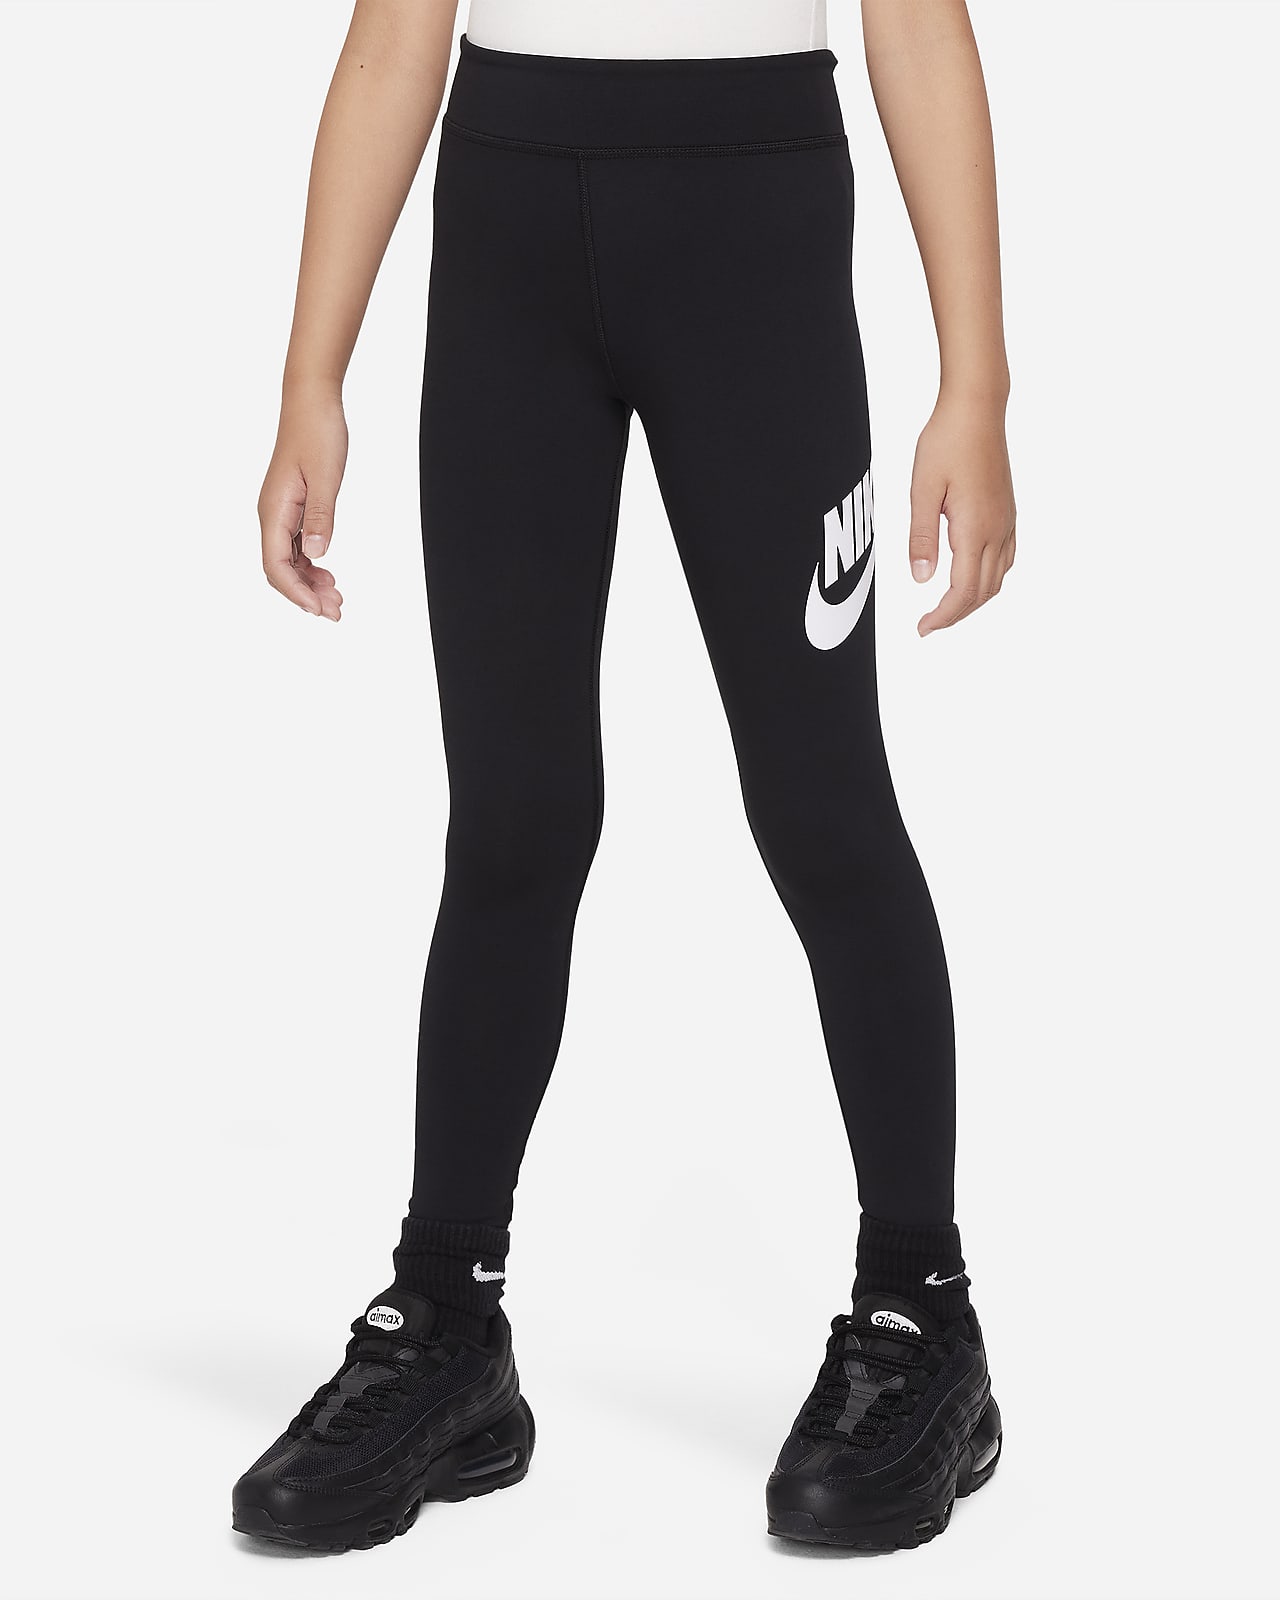 Legging taille mi-haute Nike Sportswear Essential pour ado (fille)